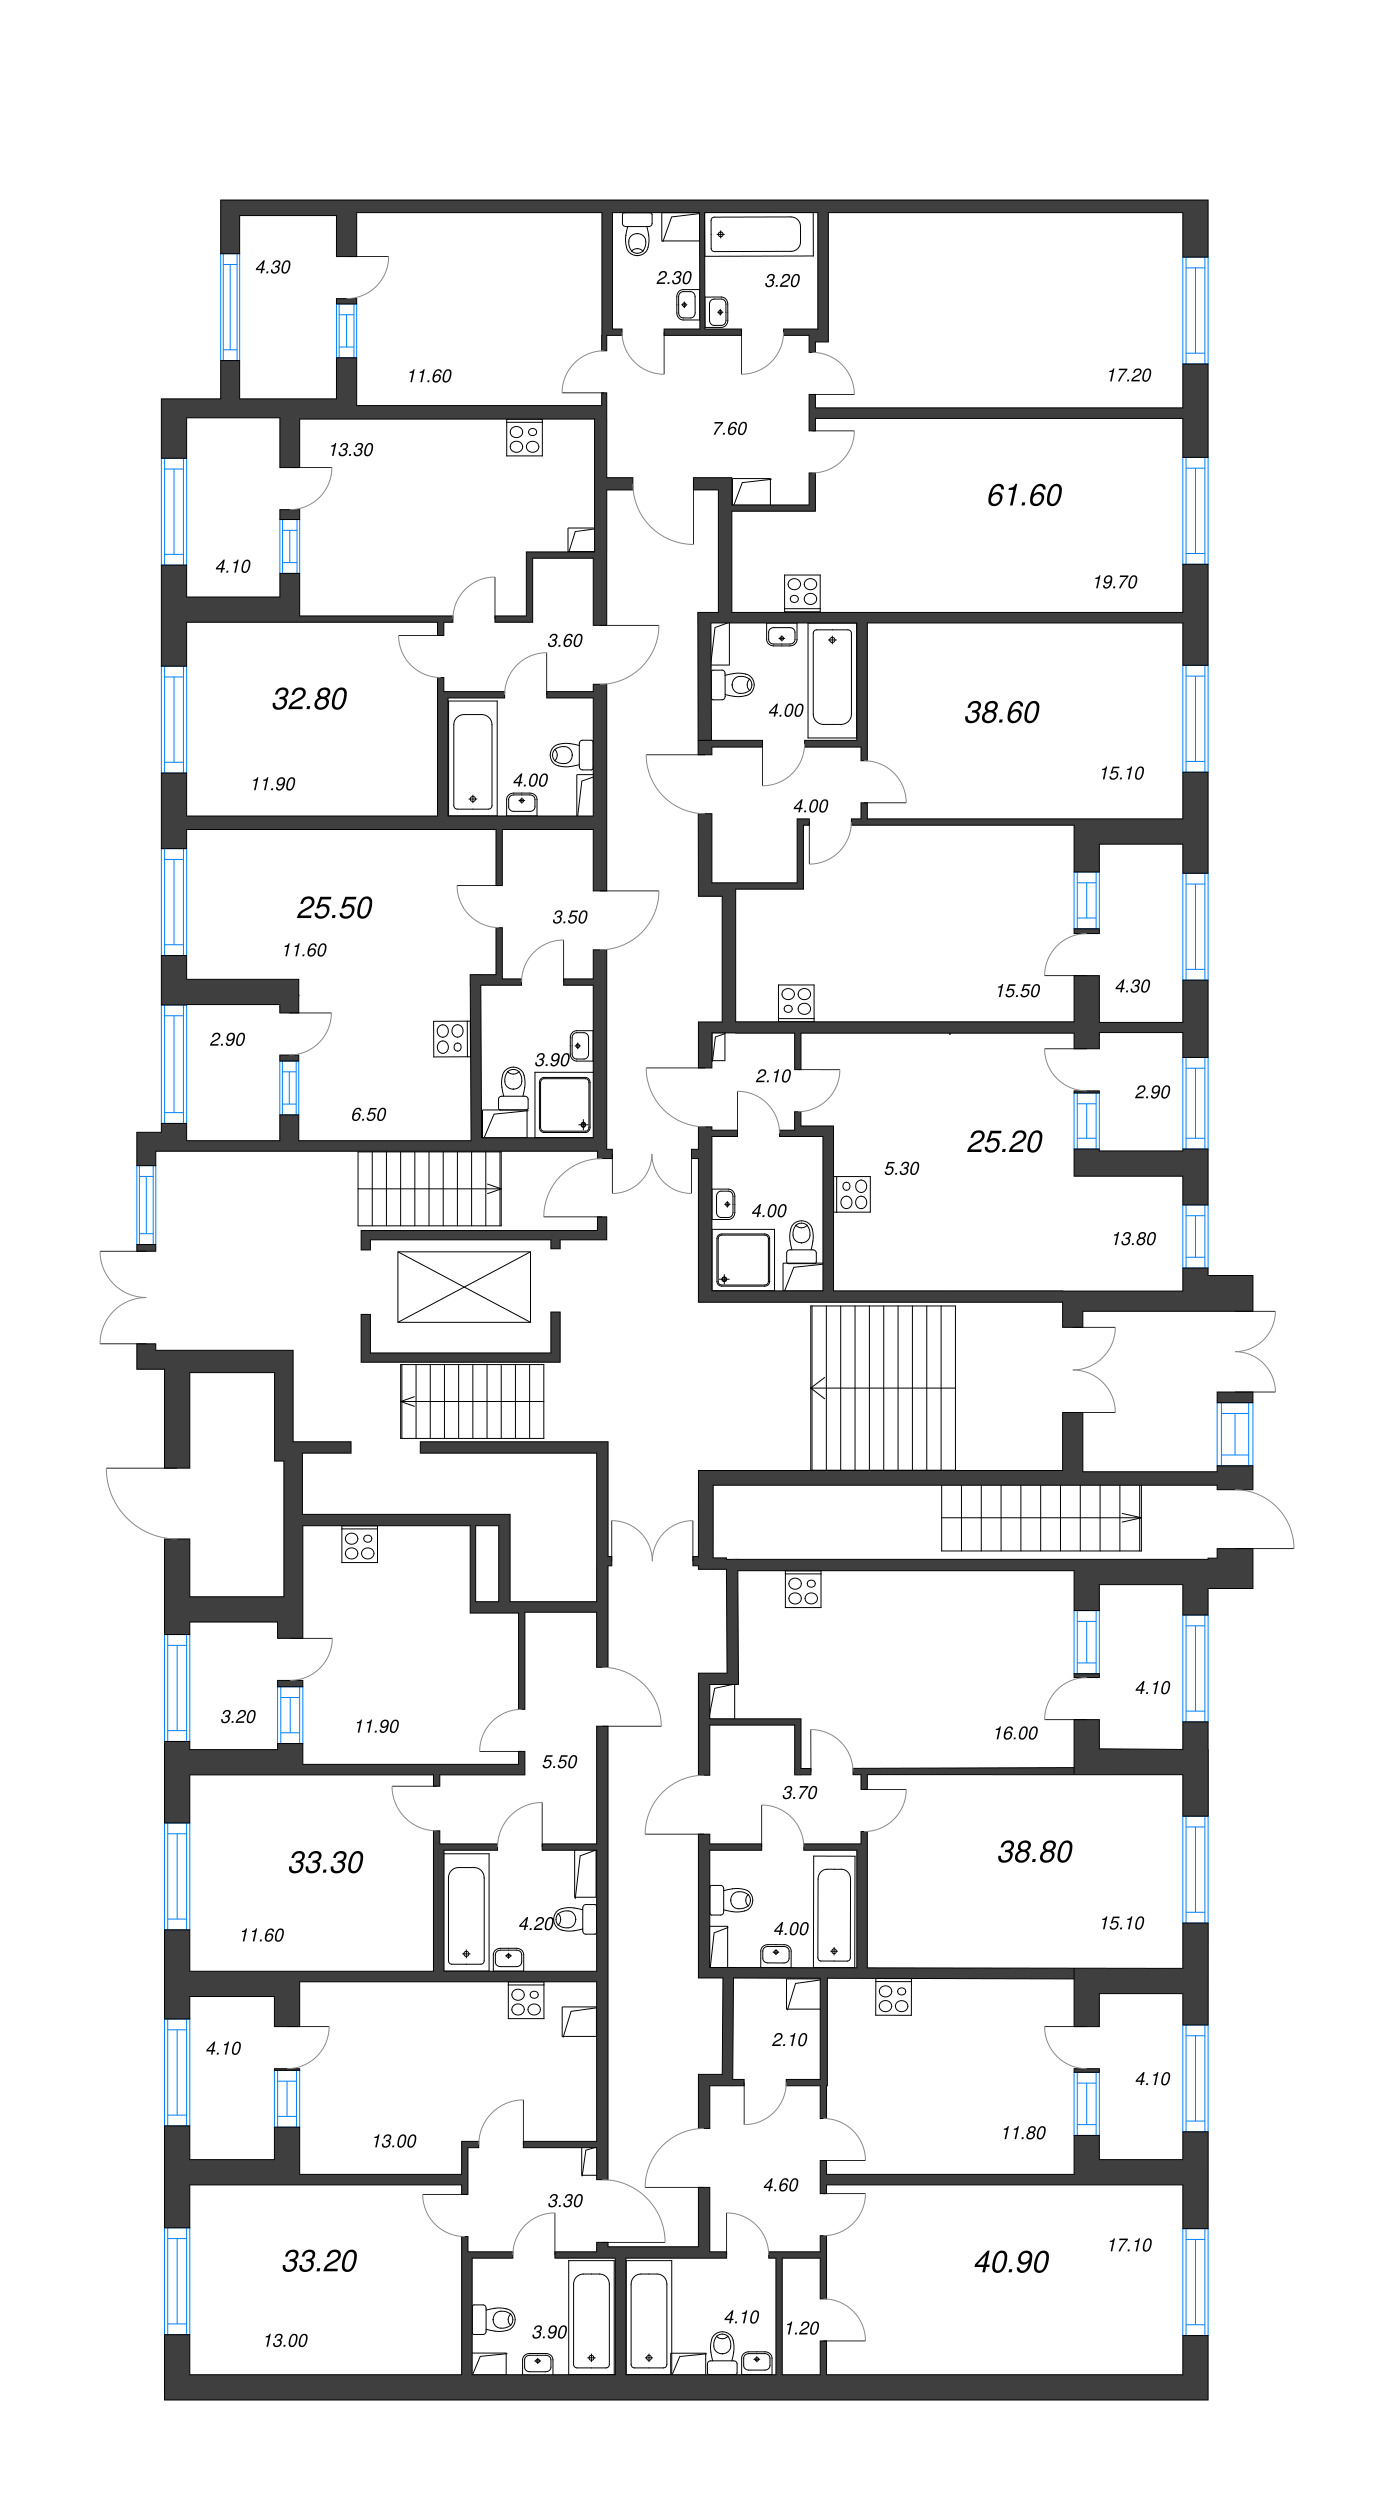 2-комнатная (Евро) квартира, 38.6 м² в ЖК "ЮгТаун" - планировка этажа